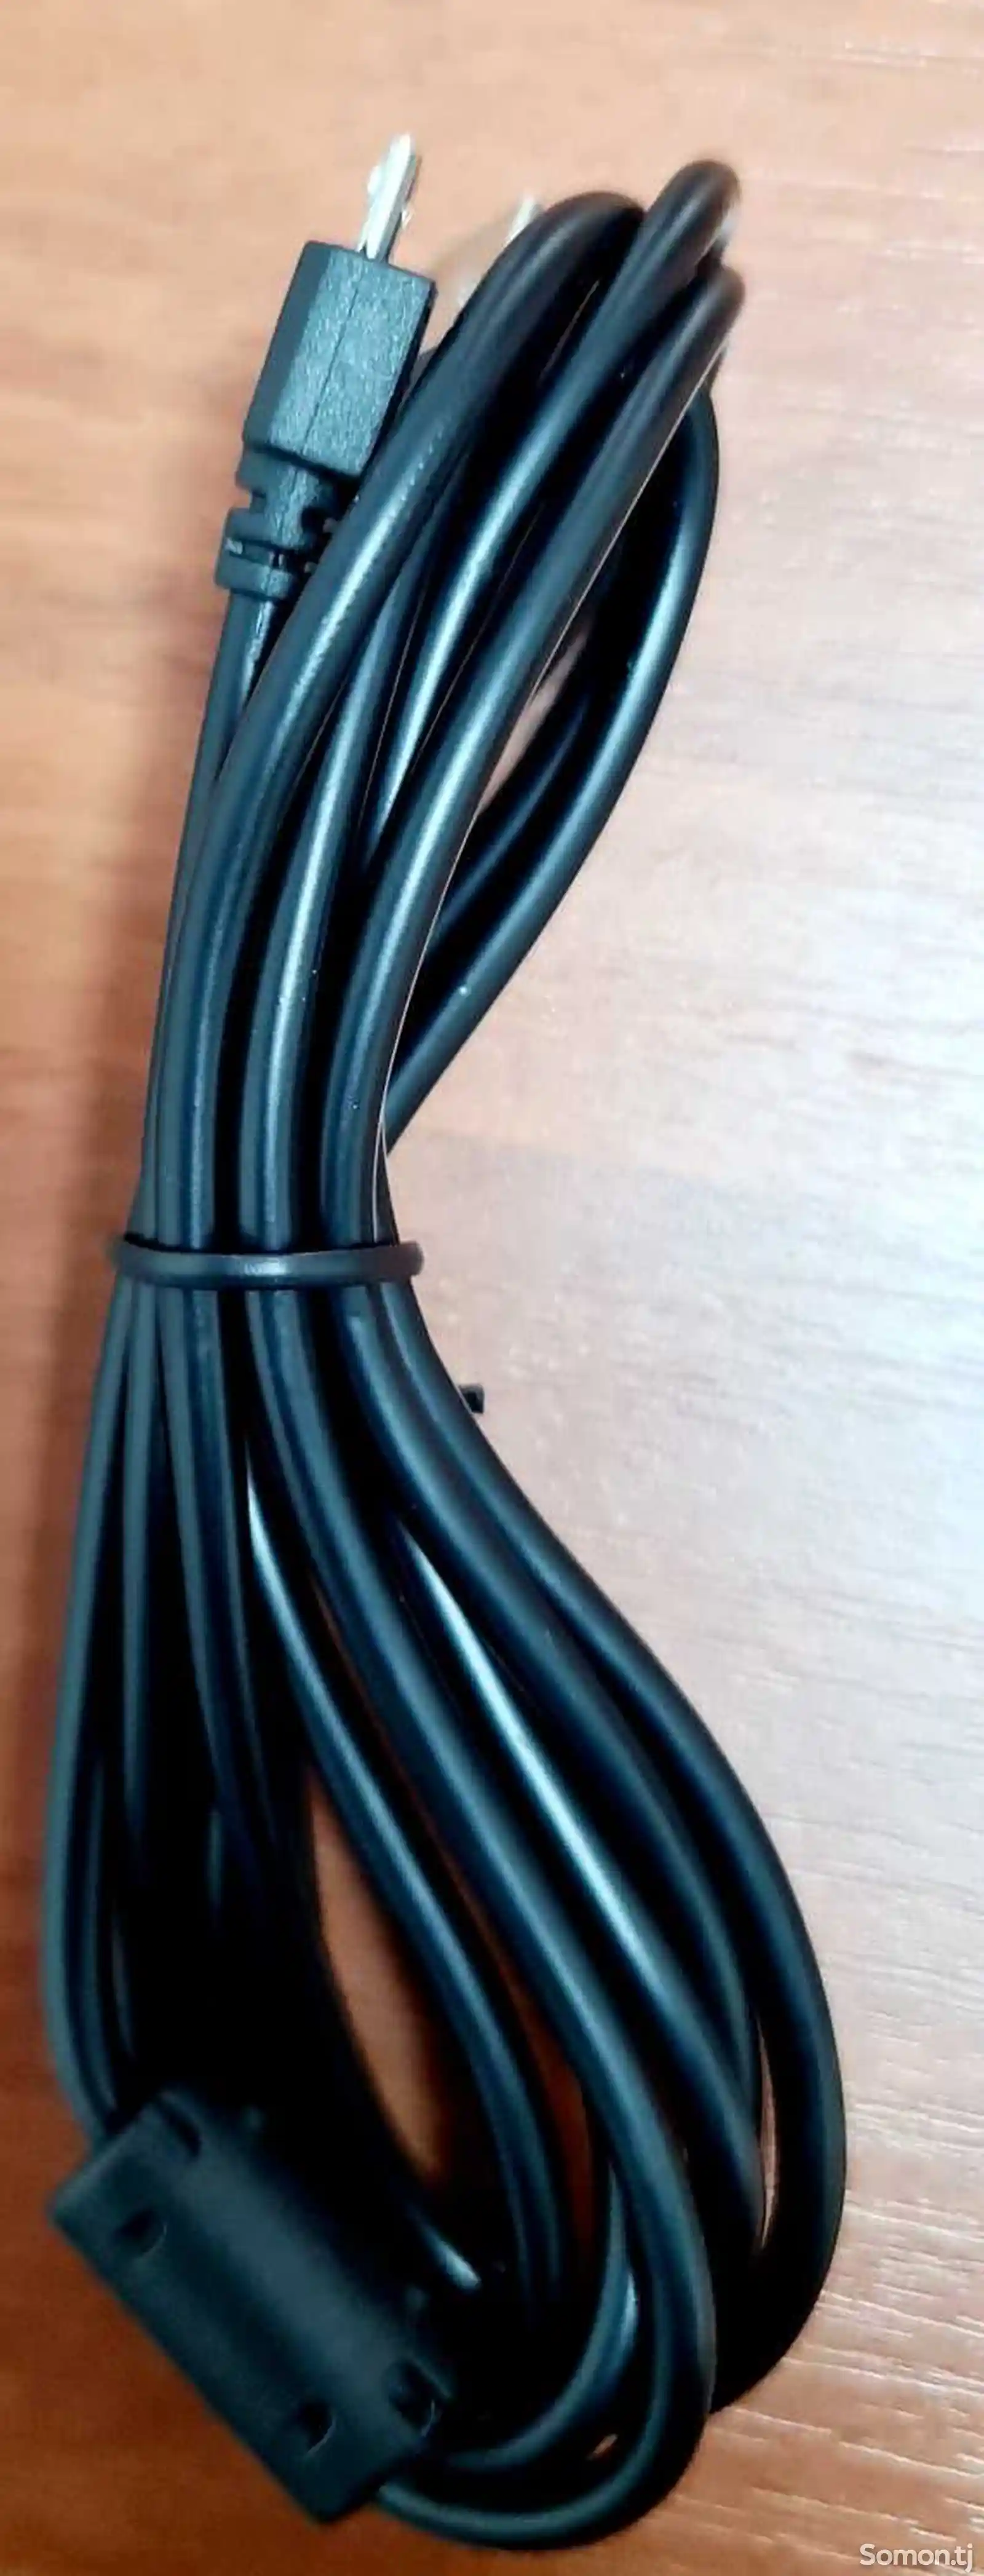 USB кабель для Джестика PS4-5